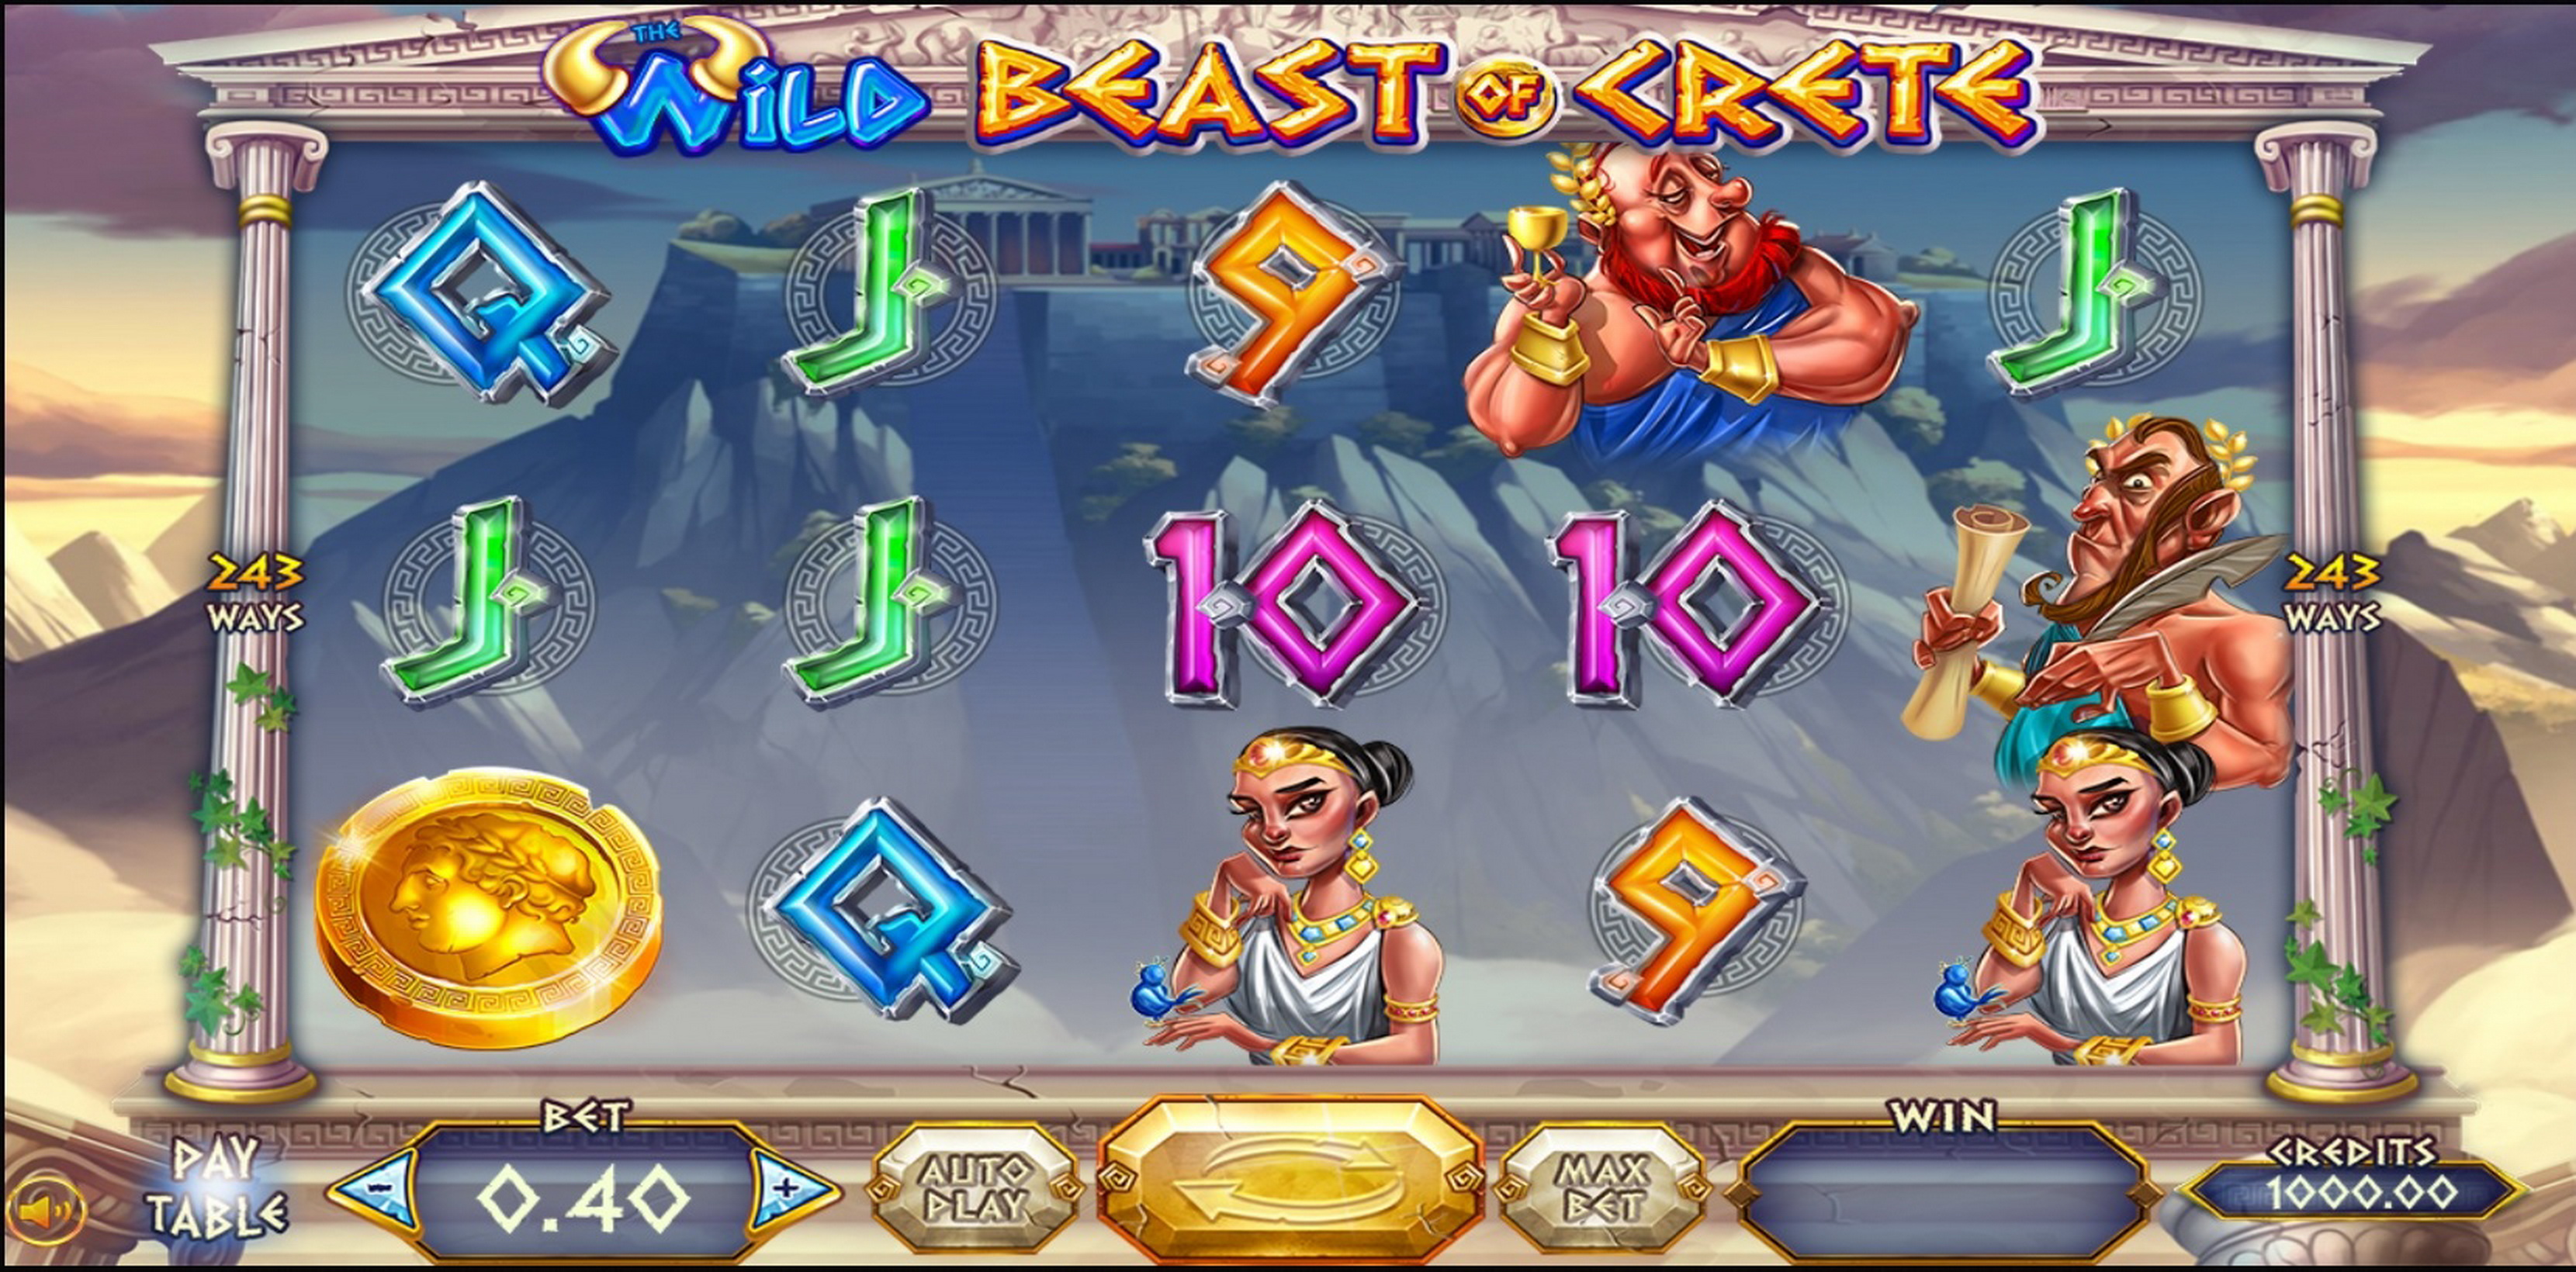 Reels in Wild Beast of Crete Slot Game by Felix Gaming